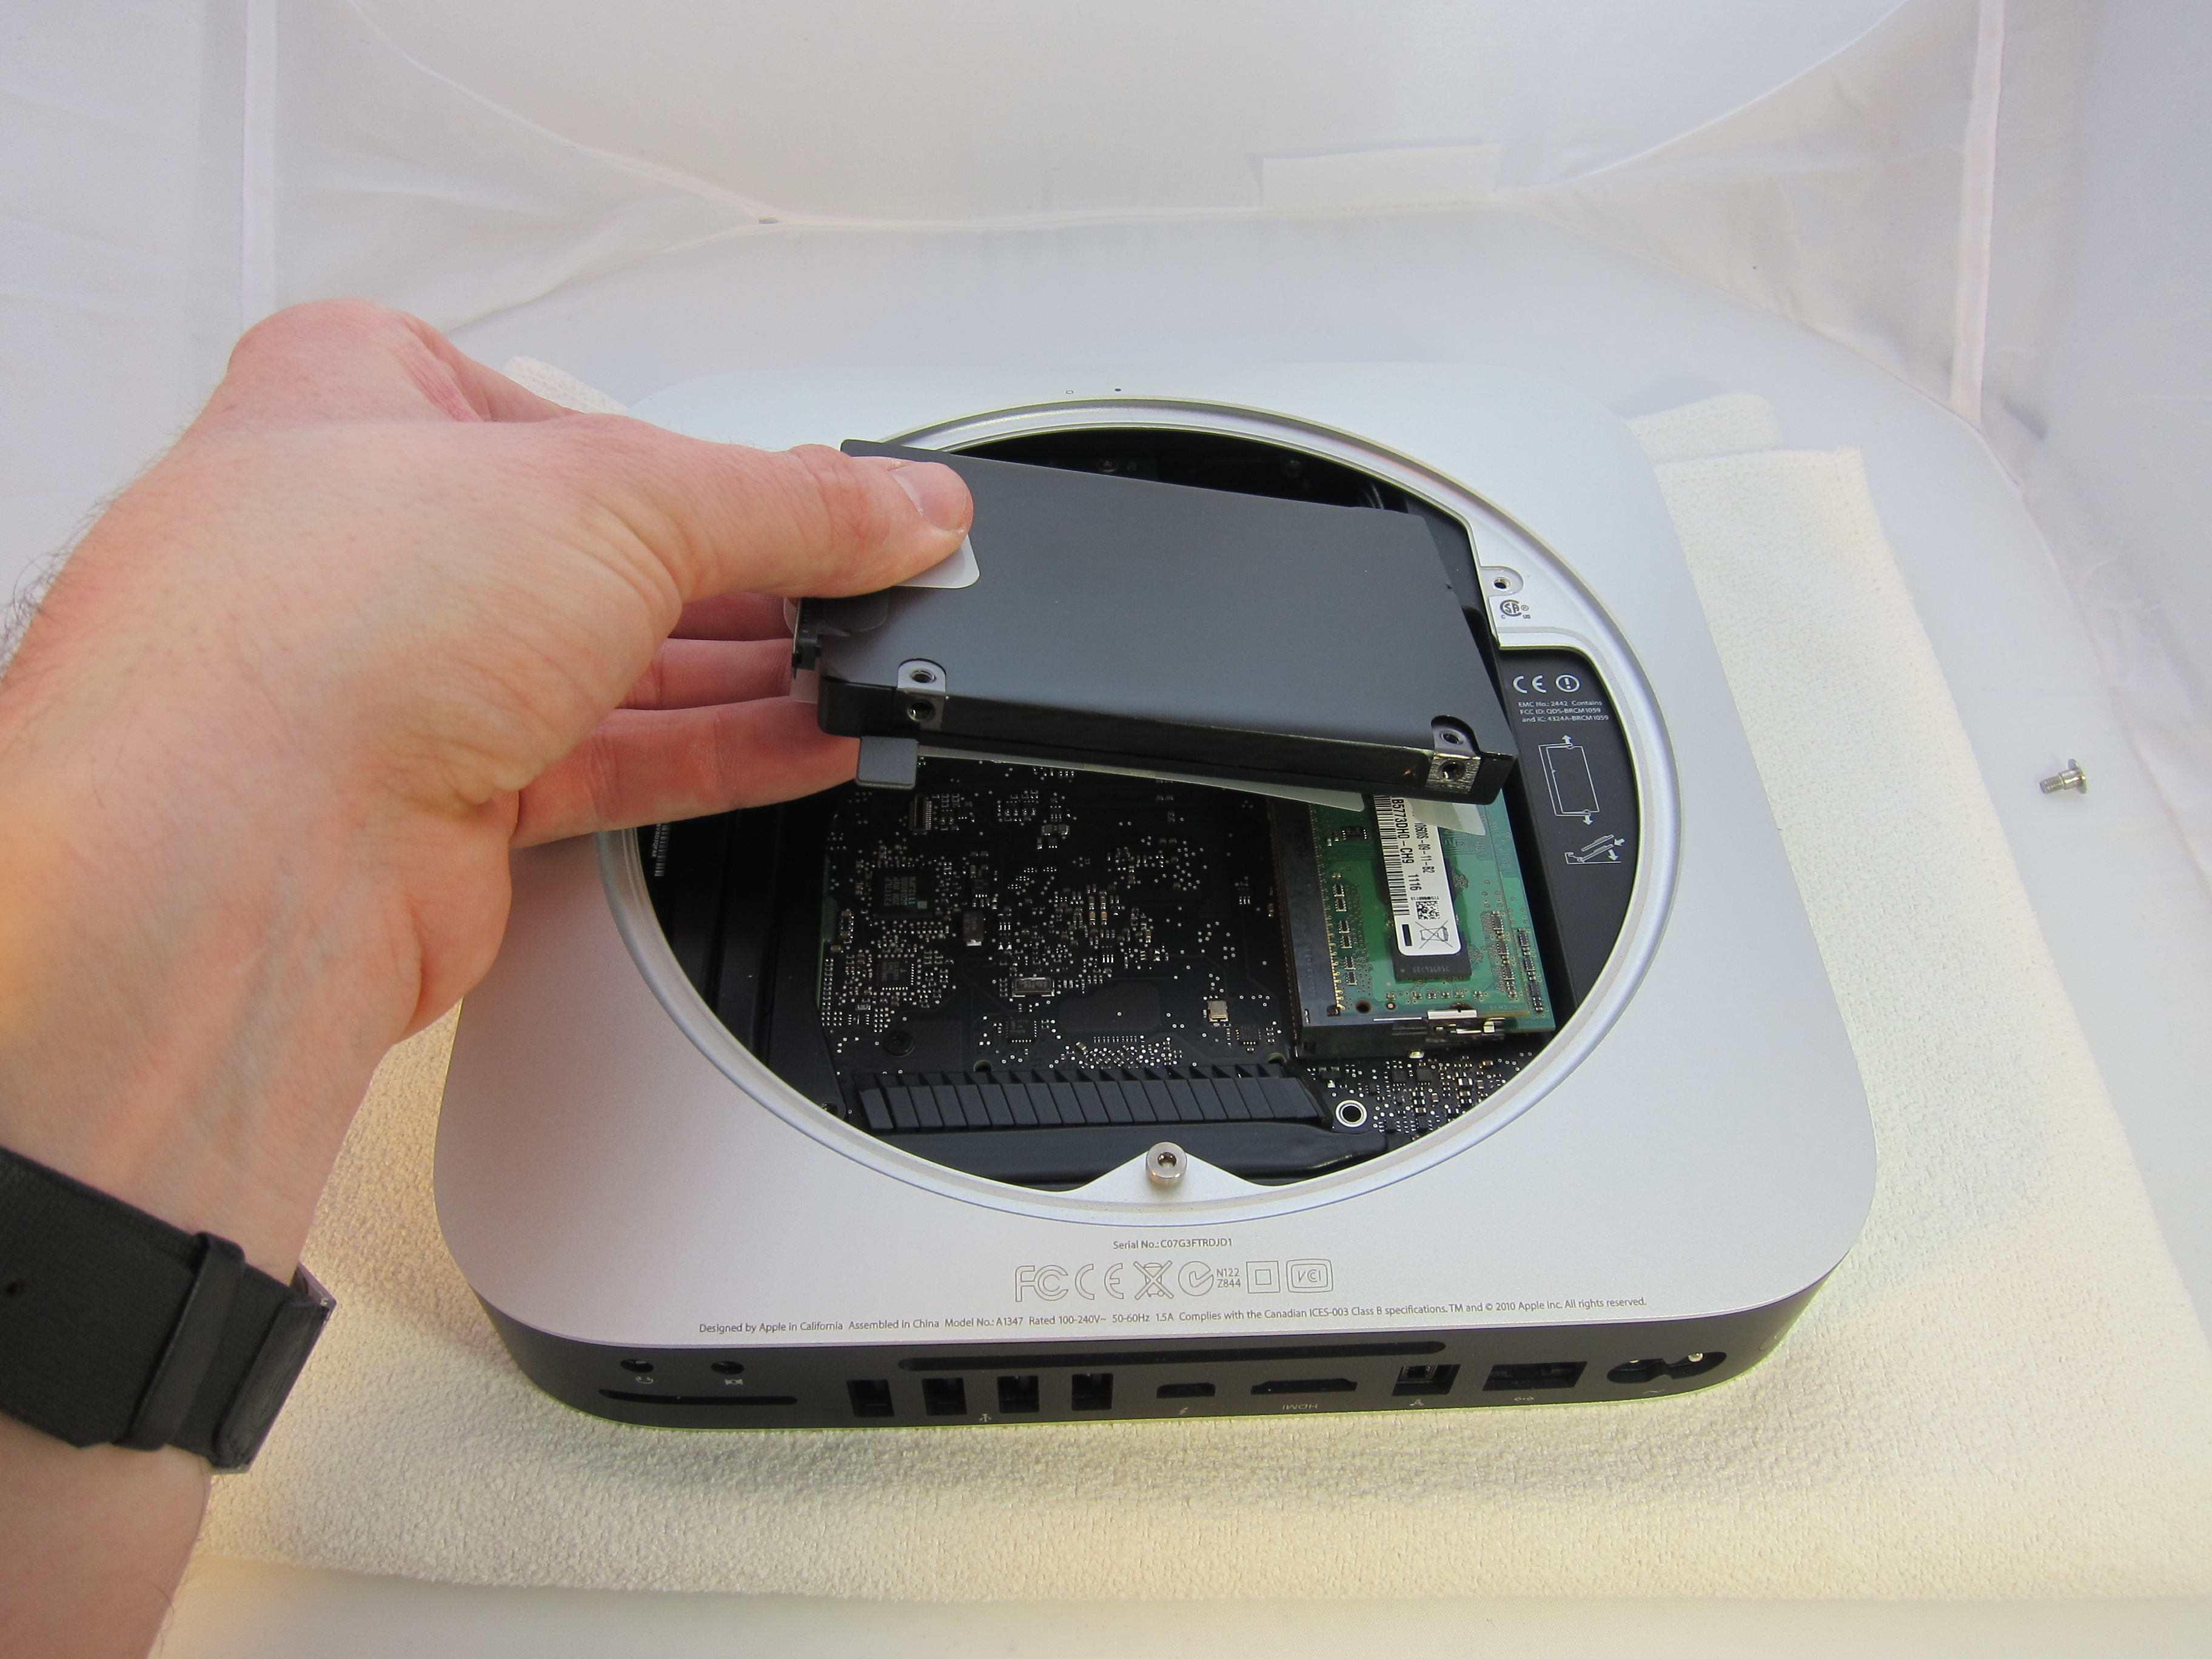 2011 mac mini hard drive upgrade